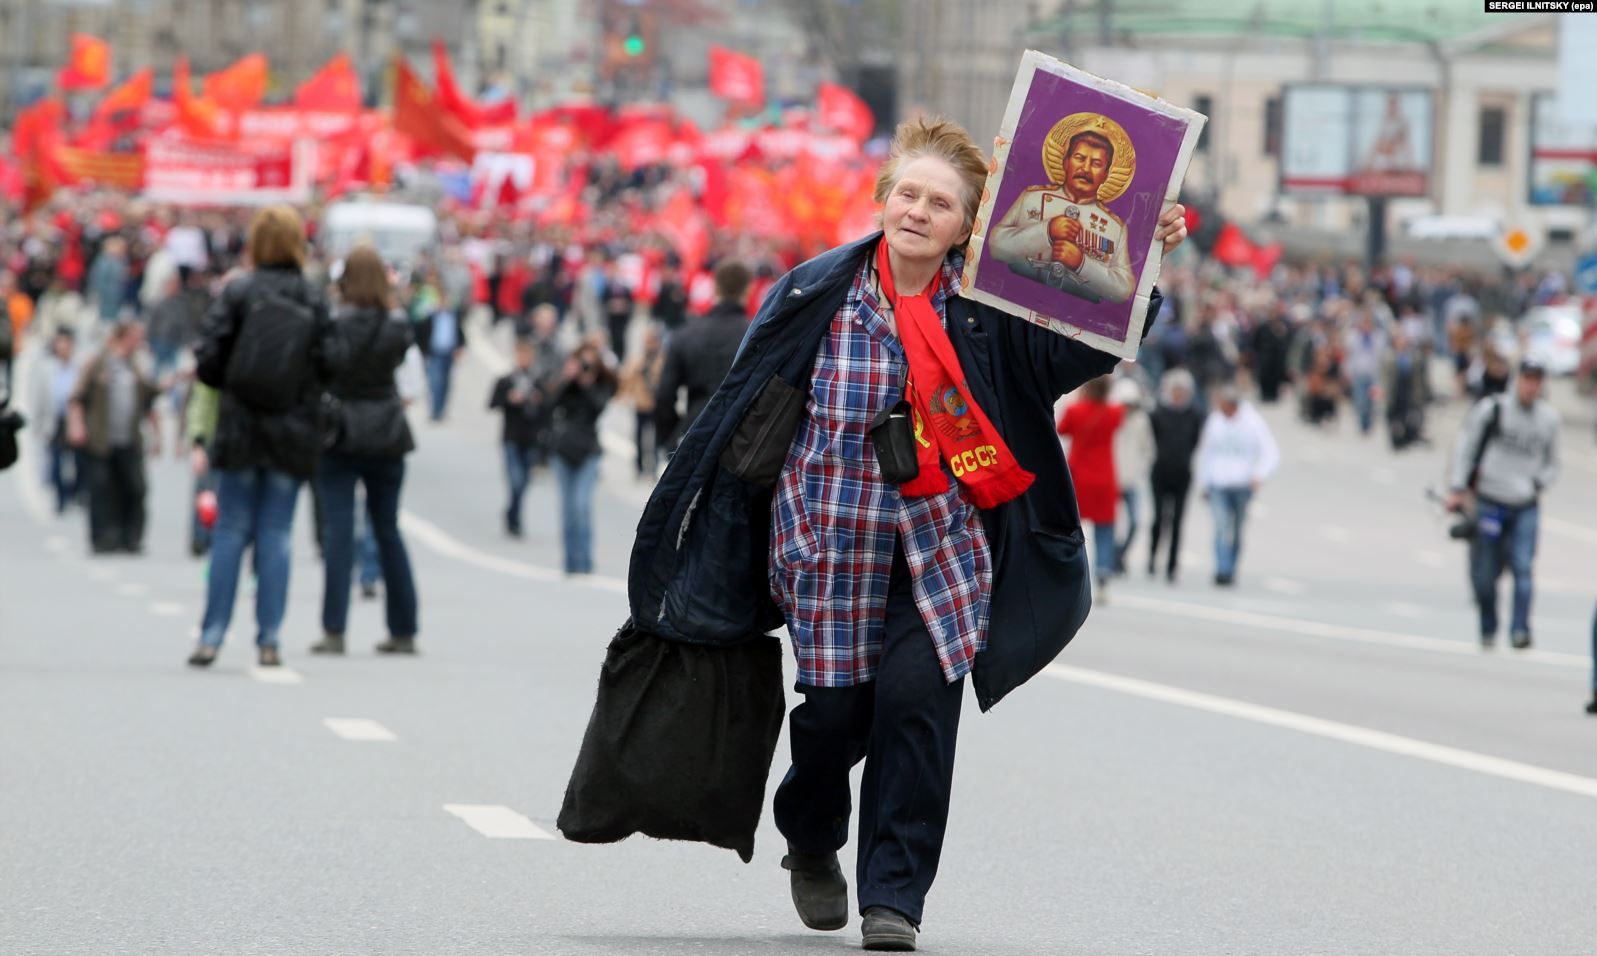 Прихильниця російської комуністичної партії несе ікону радянського диктатора Йосипа Сталіна під час демонстрації з нагоди Дня праці в Москві, 01 травня 2012 року - фото 62008